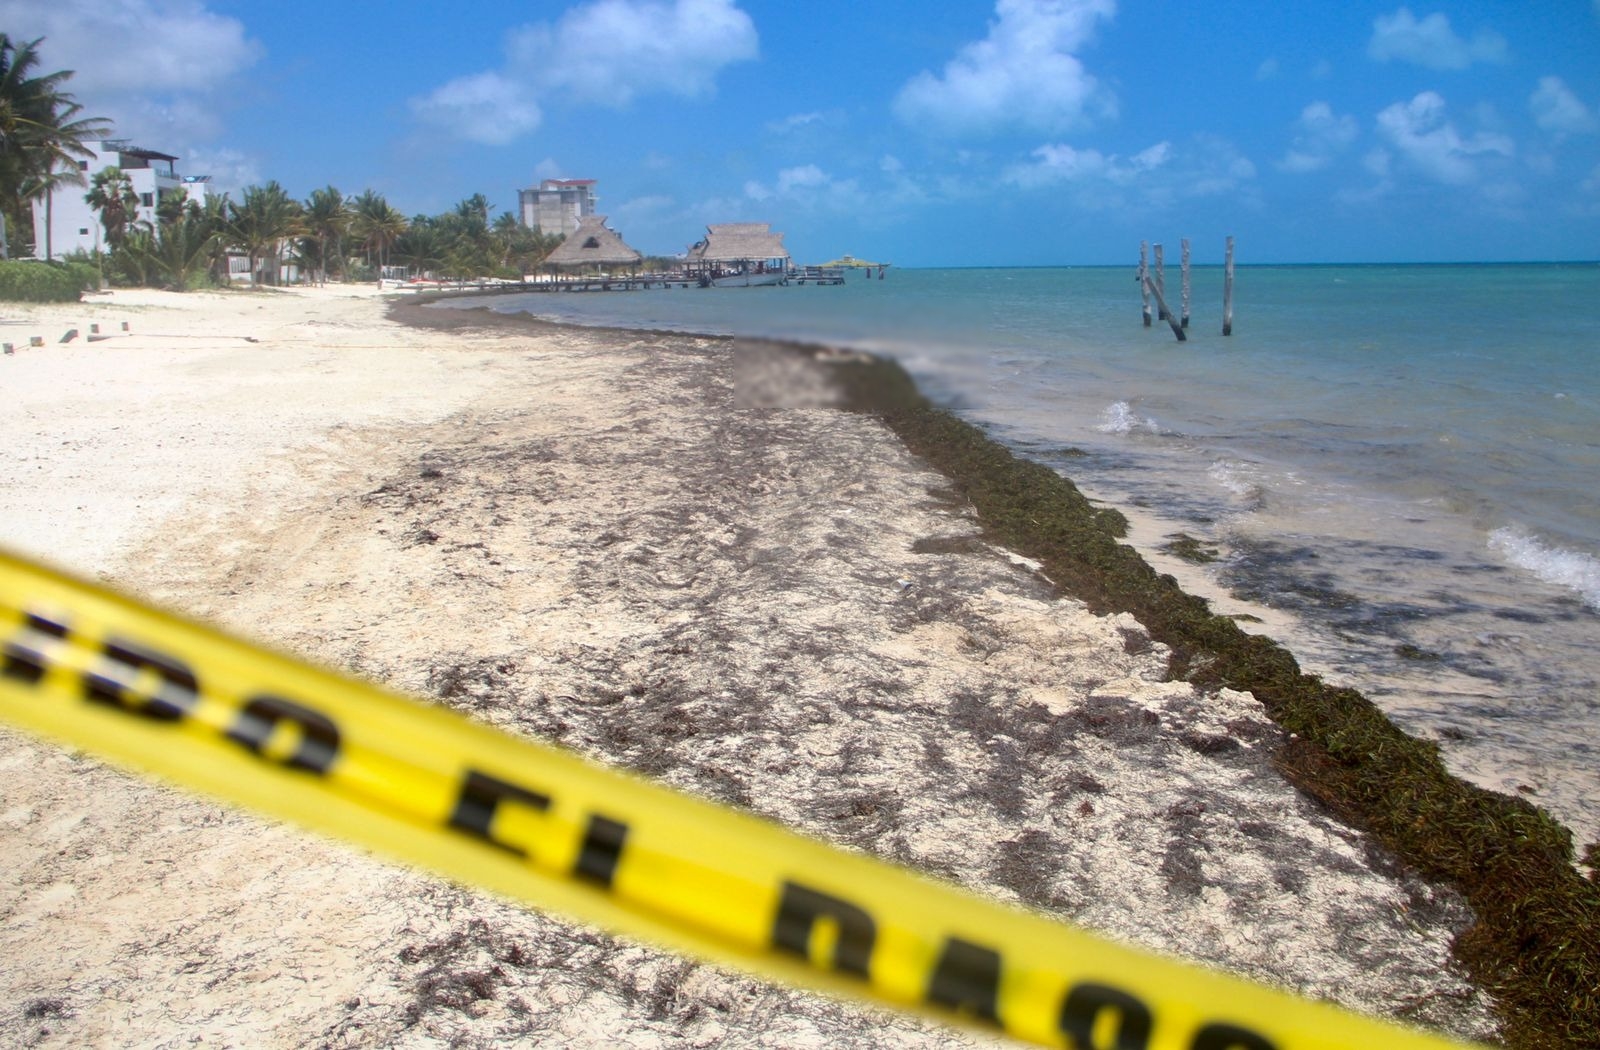 Hallan restos humanos en plena playa de Puerto Juárez en Cancún: VIDEO